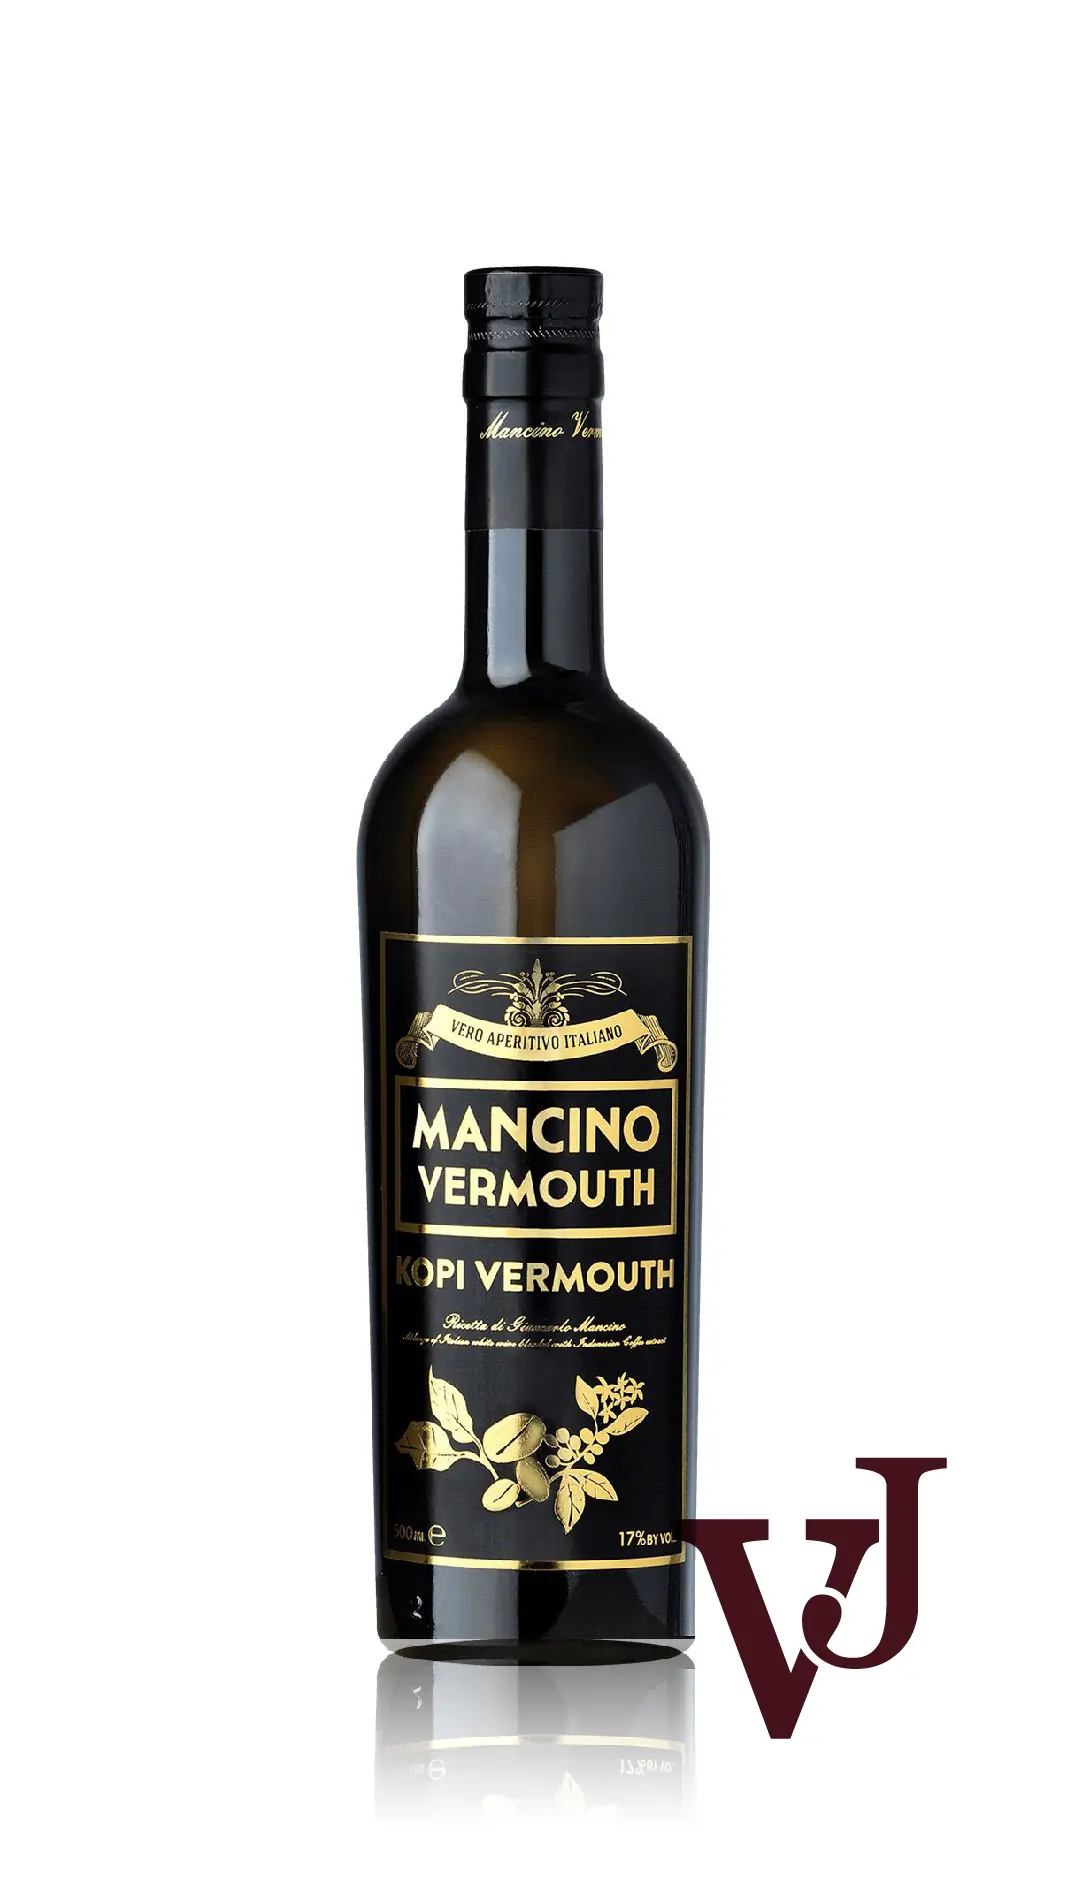 Övrigt vin - Mancino Vermouth Kopi artikel nummer 7138802 från producenten Giancarlo Mancino från området Italien - Vinjournalen.se